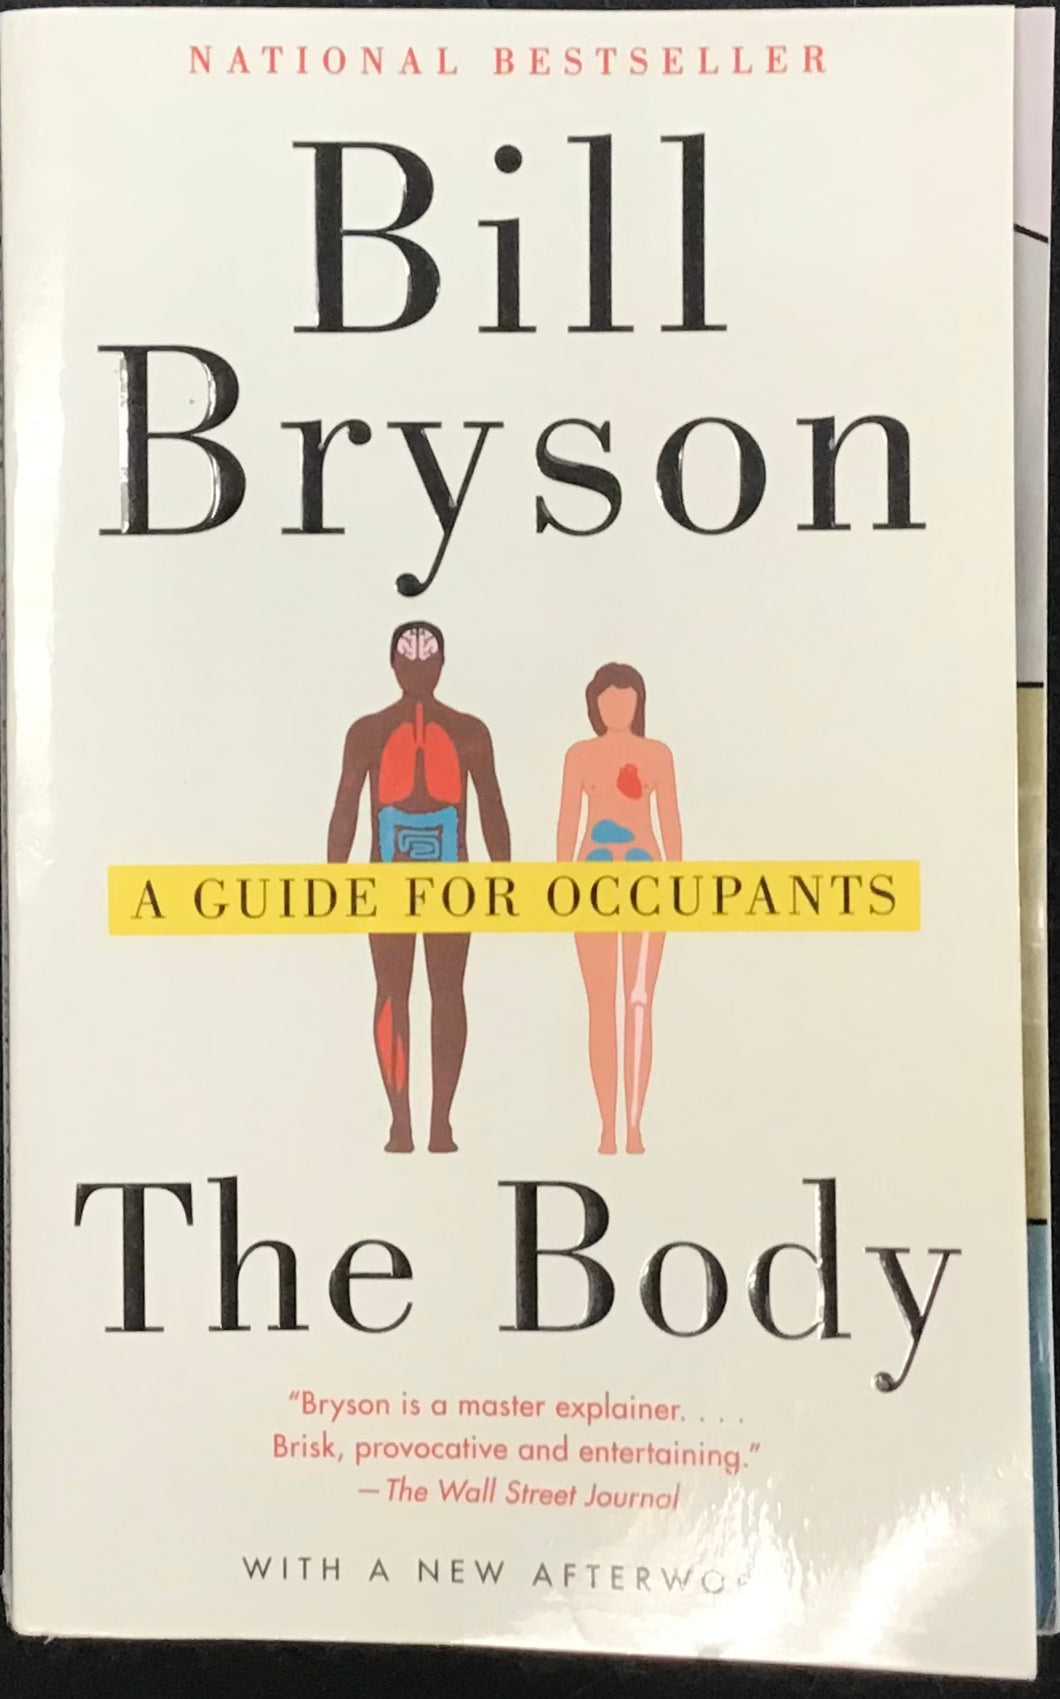 The Body, Bill Bryson